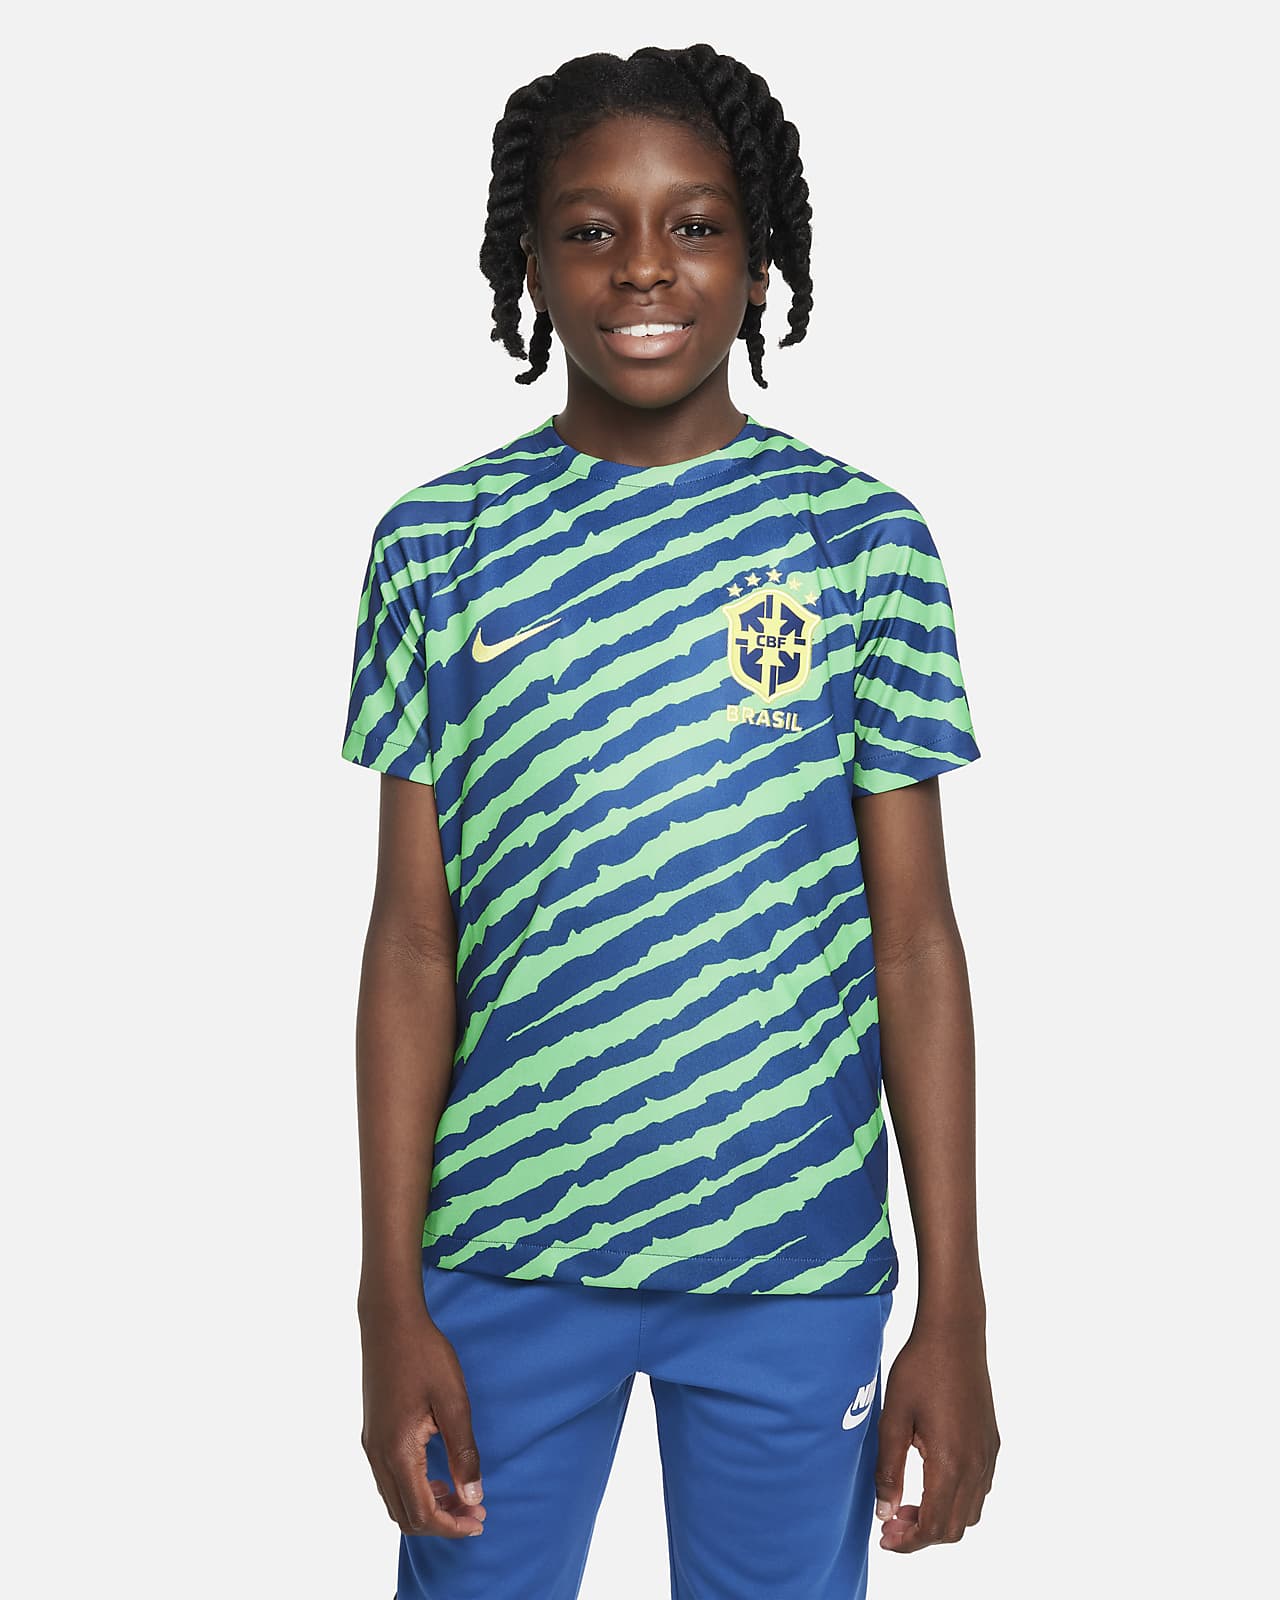 NIKE CBF Brazil Soccer T-Shirt Blue - 100% Cotton - Men's Large